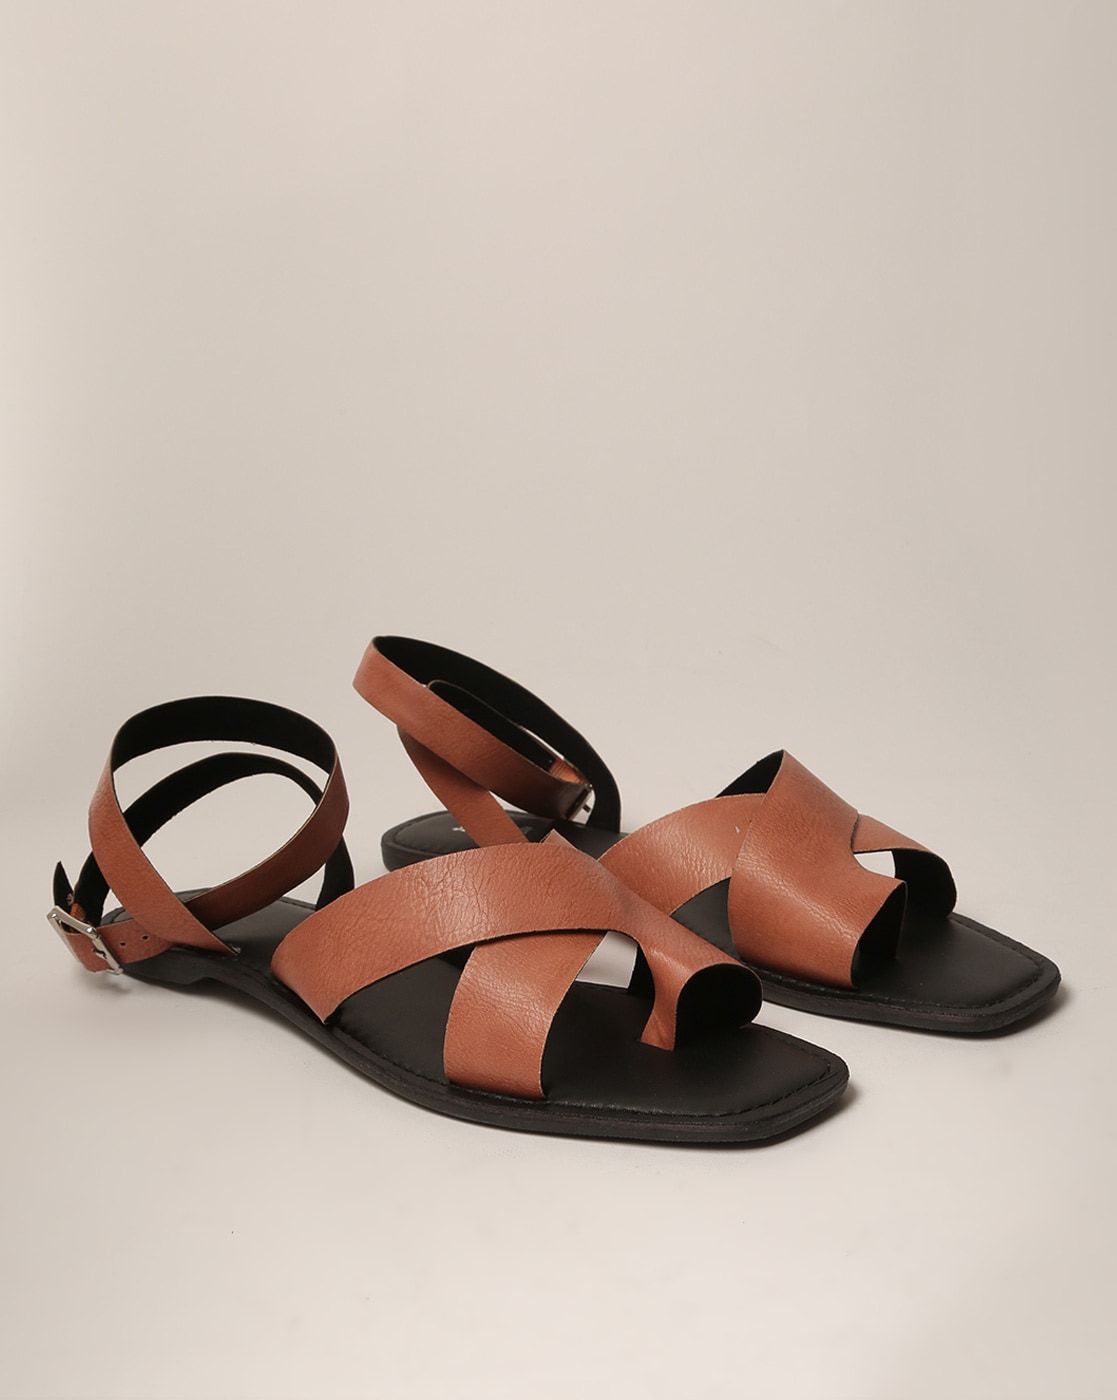 Eze Men's Black Cross Strap Sandals | Aldo Shoes